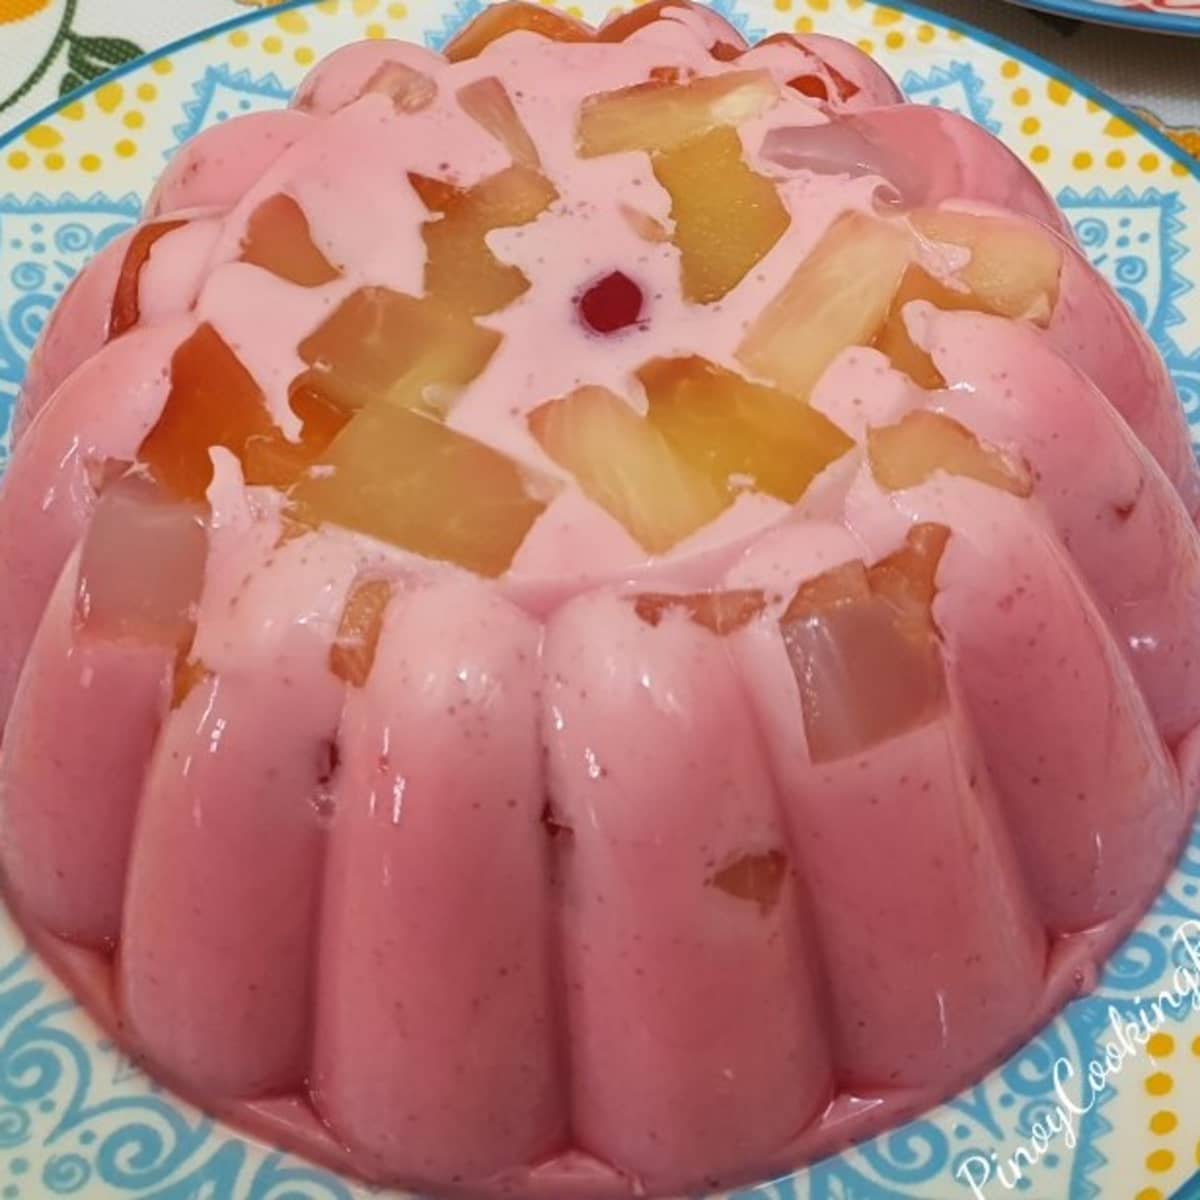 pink jello